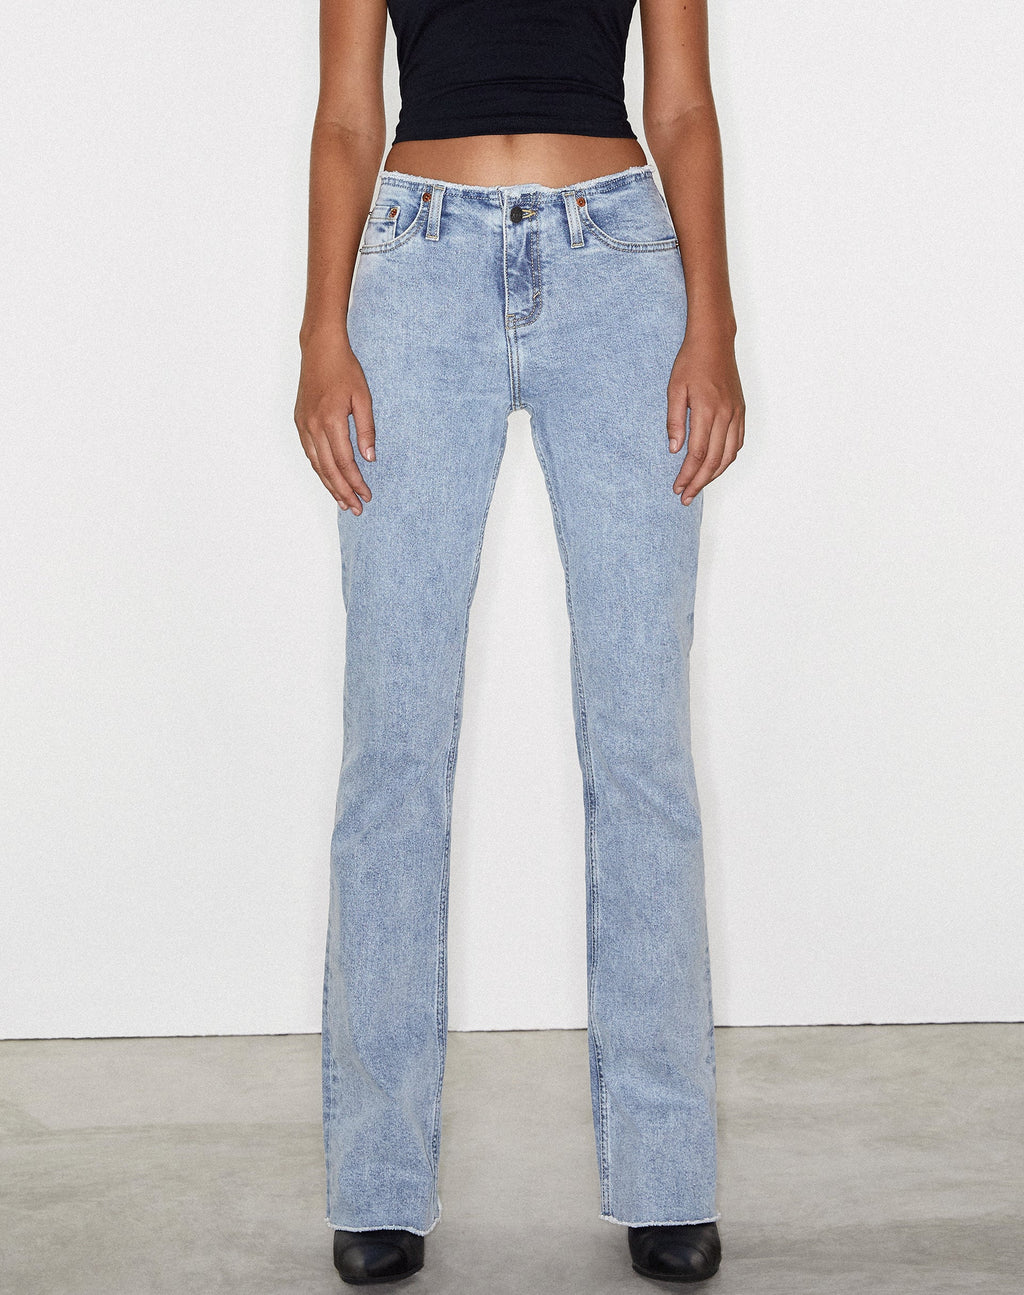 Ausgefranste Low Rise Jeans in hellblauer Waschung